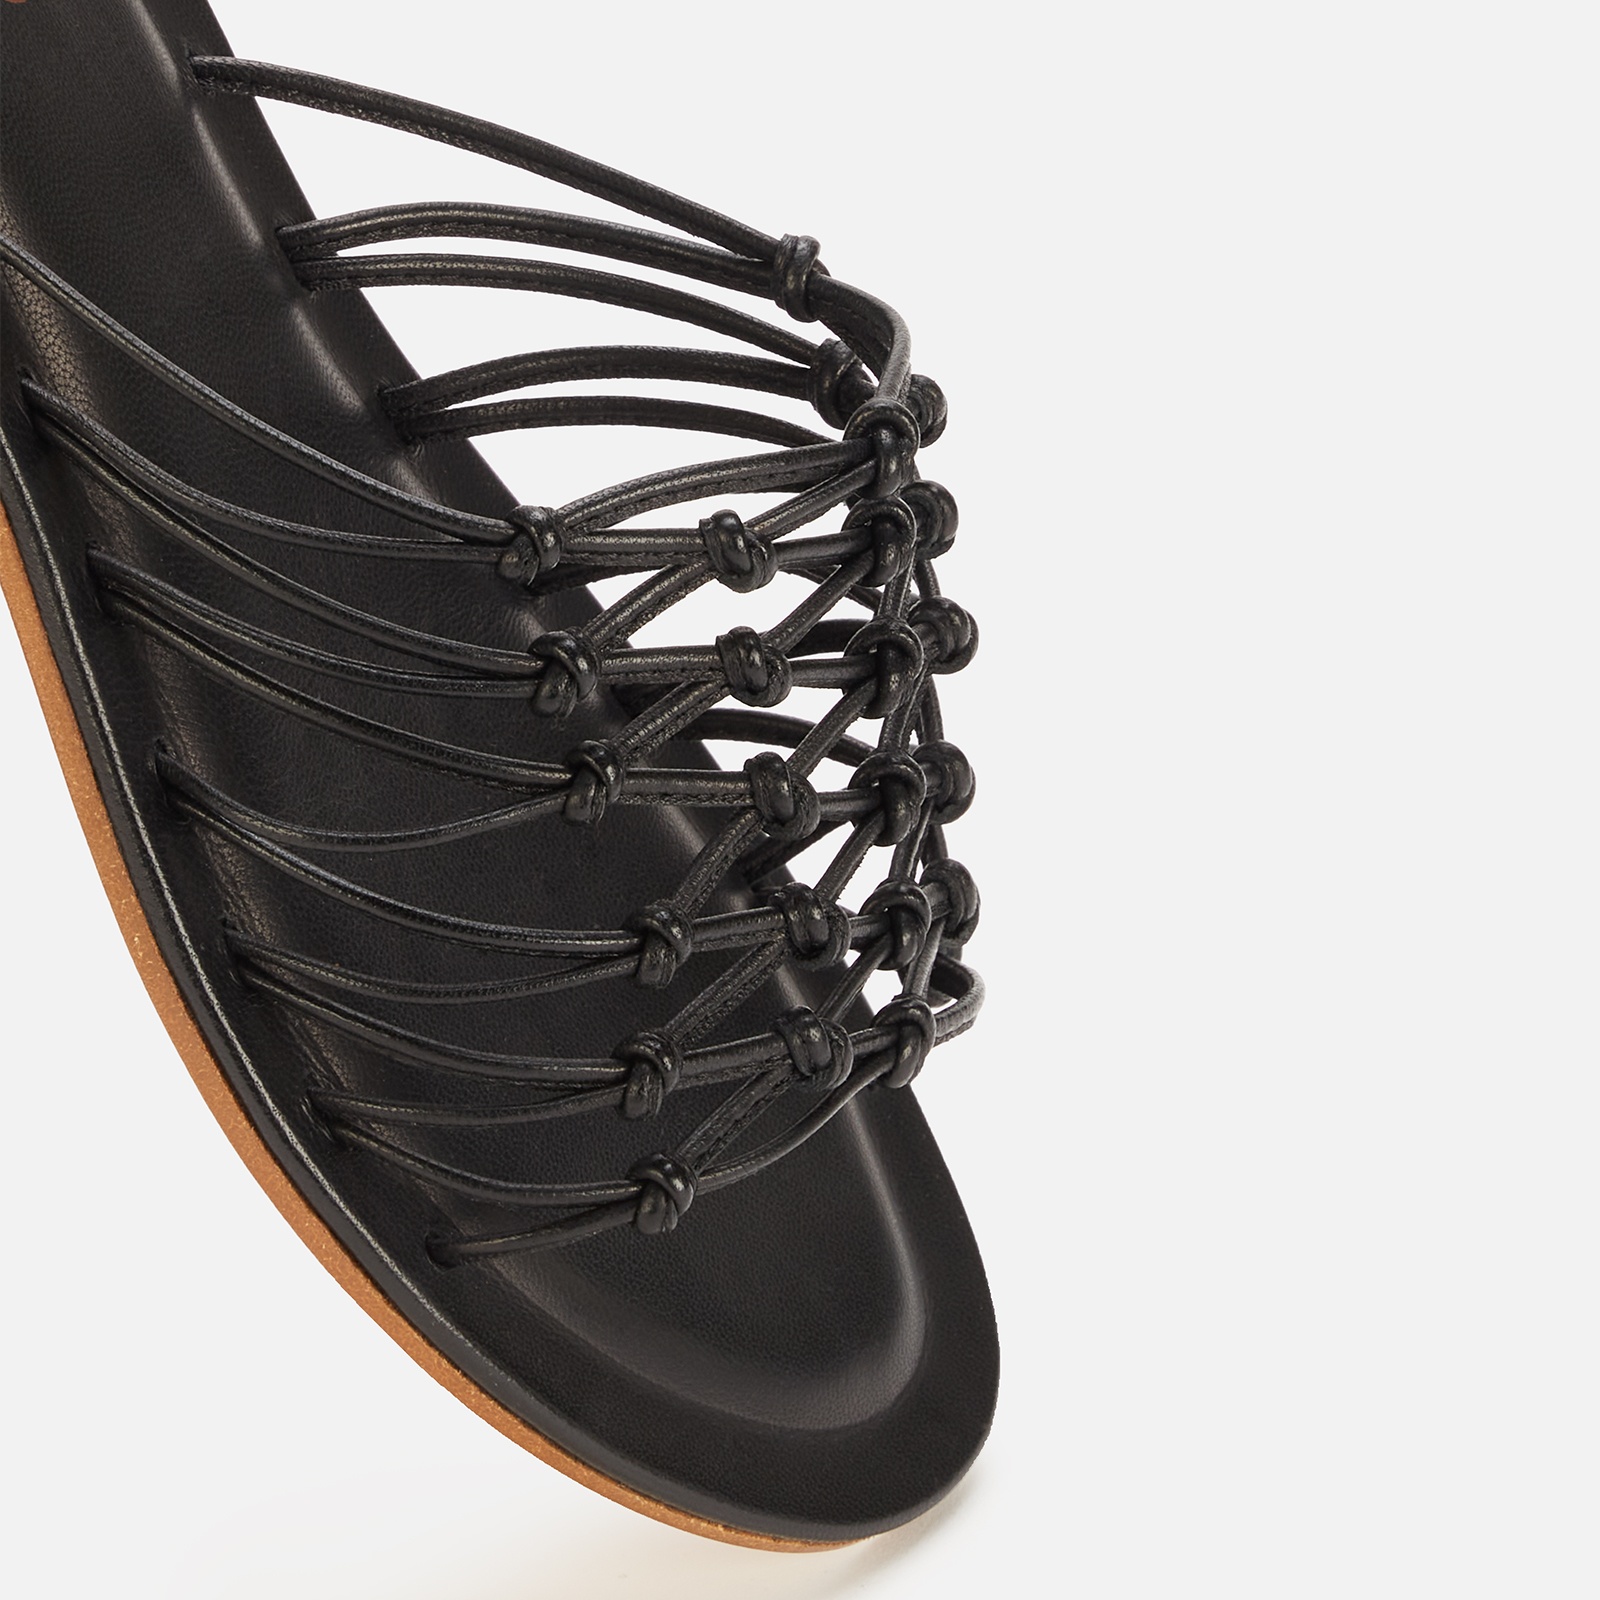 Mansur Gavriel Women's Mignon Leather Slide Sandals - Black - 4